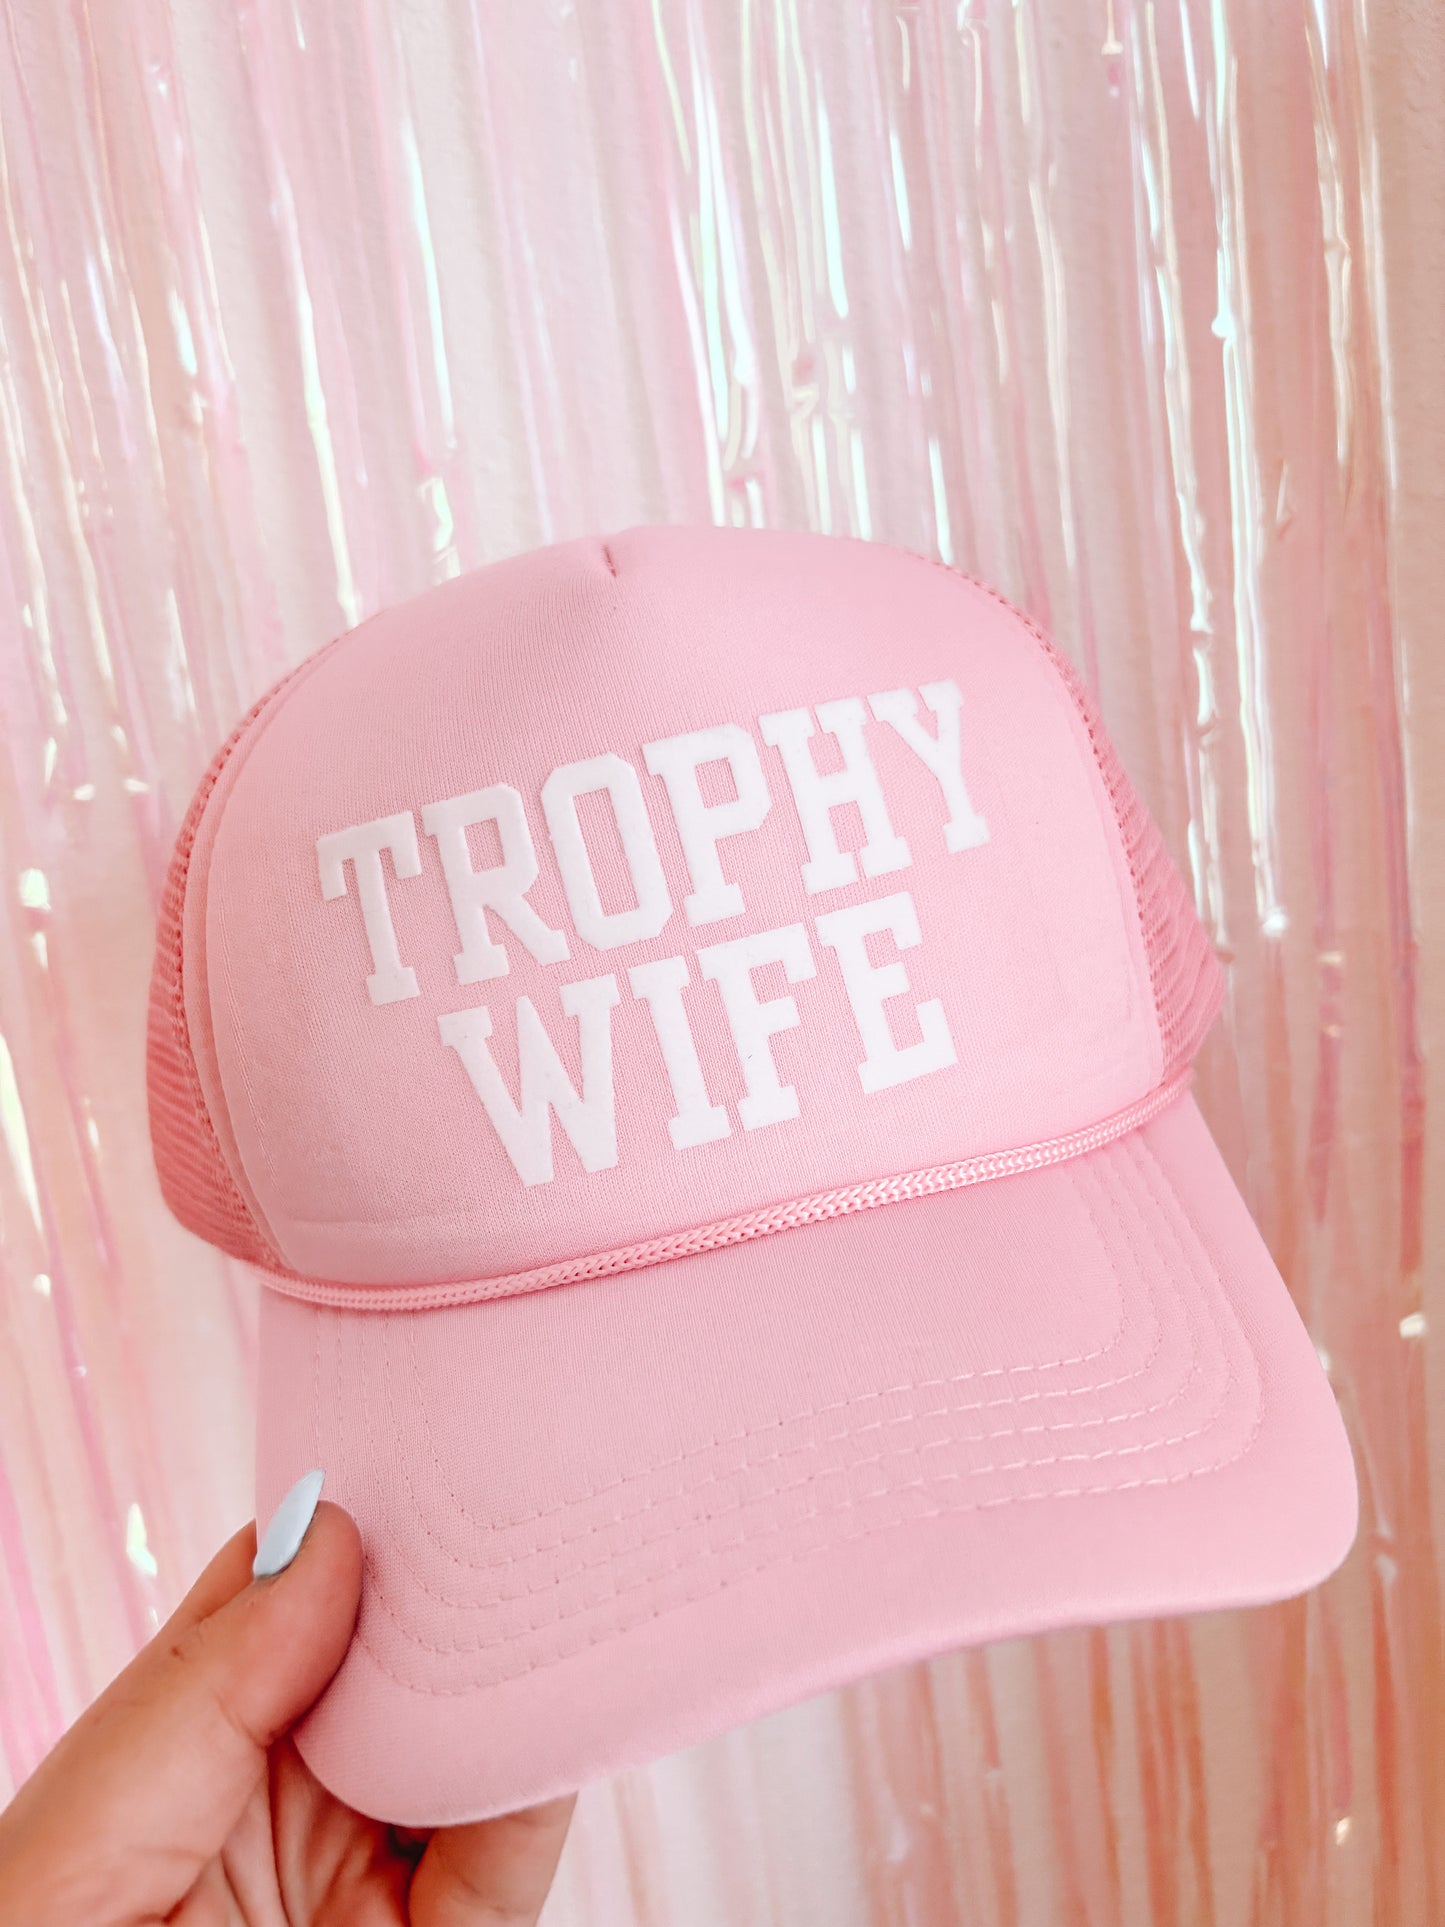 Trophy Wife Trucker Hat- Pink